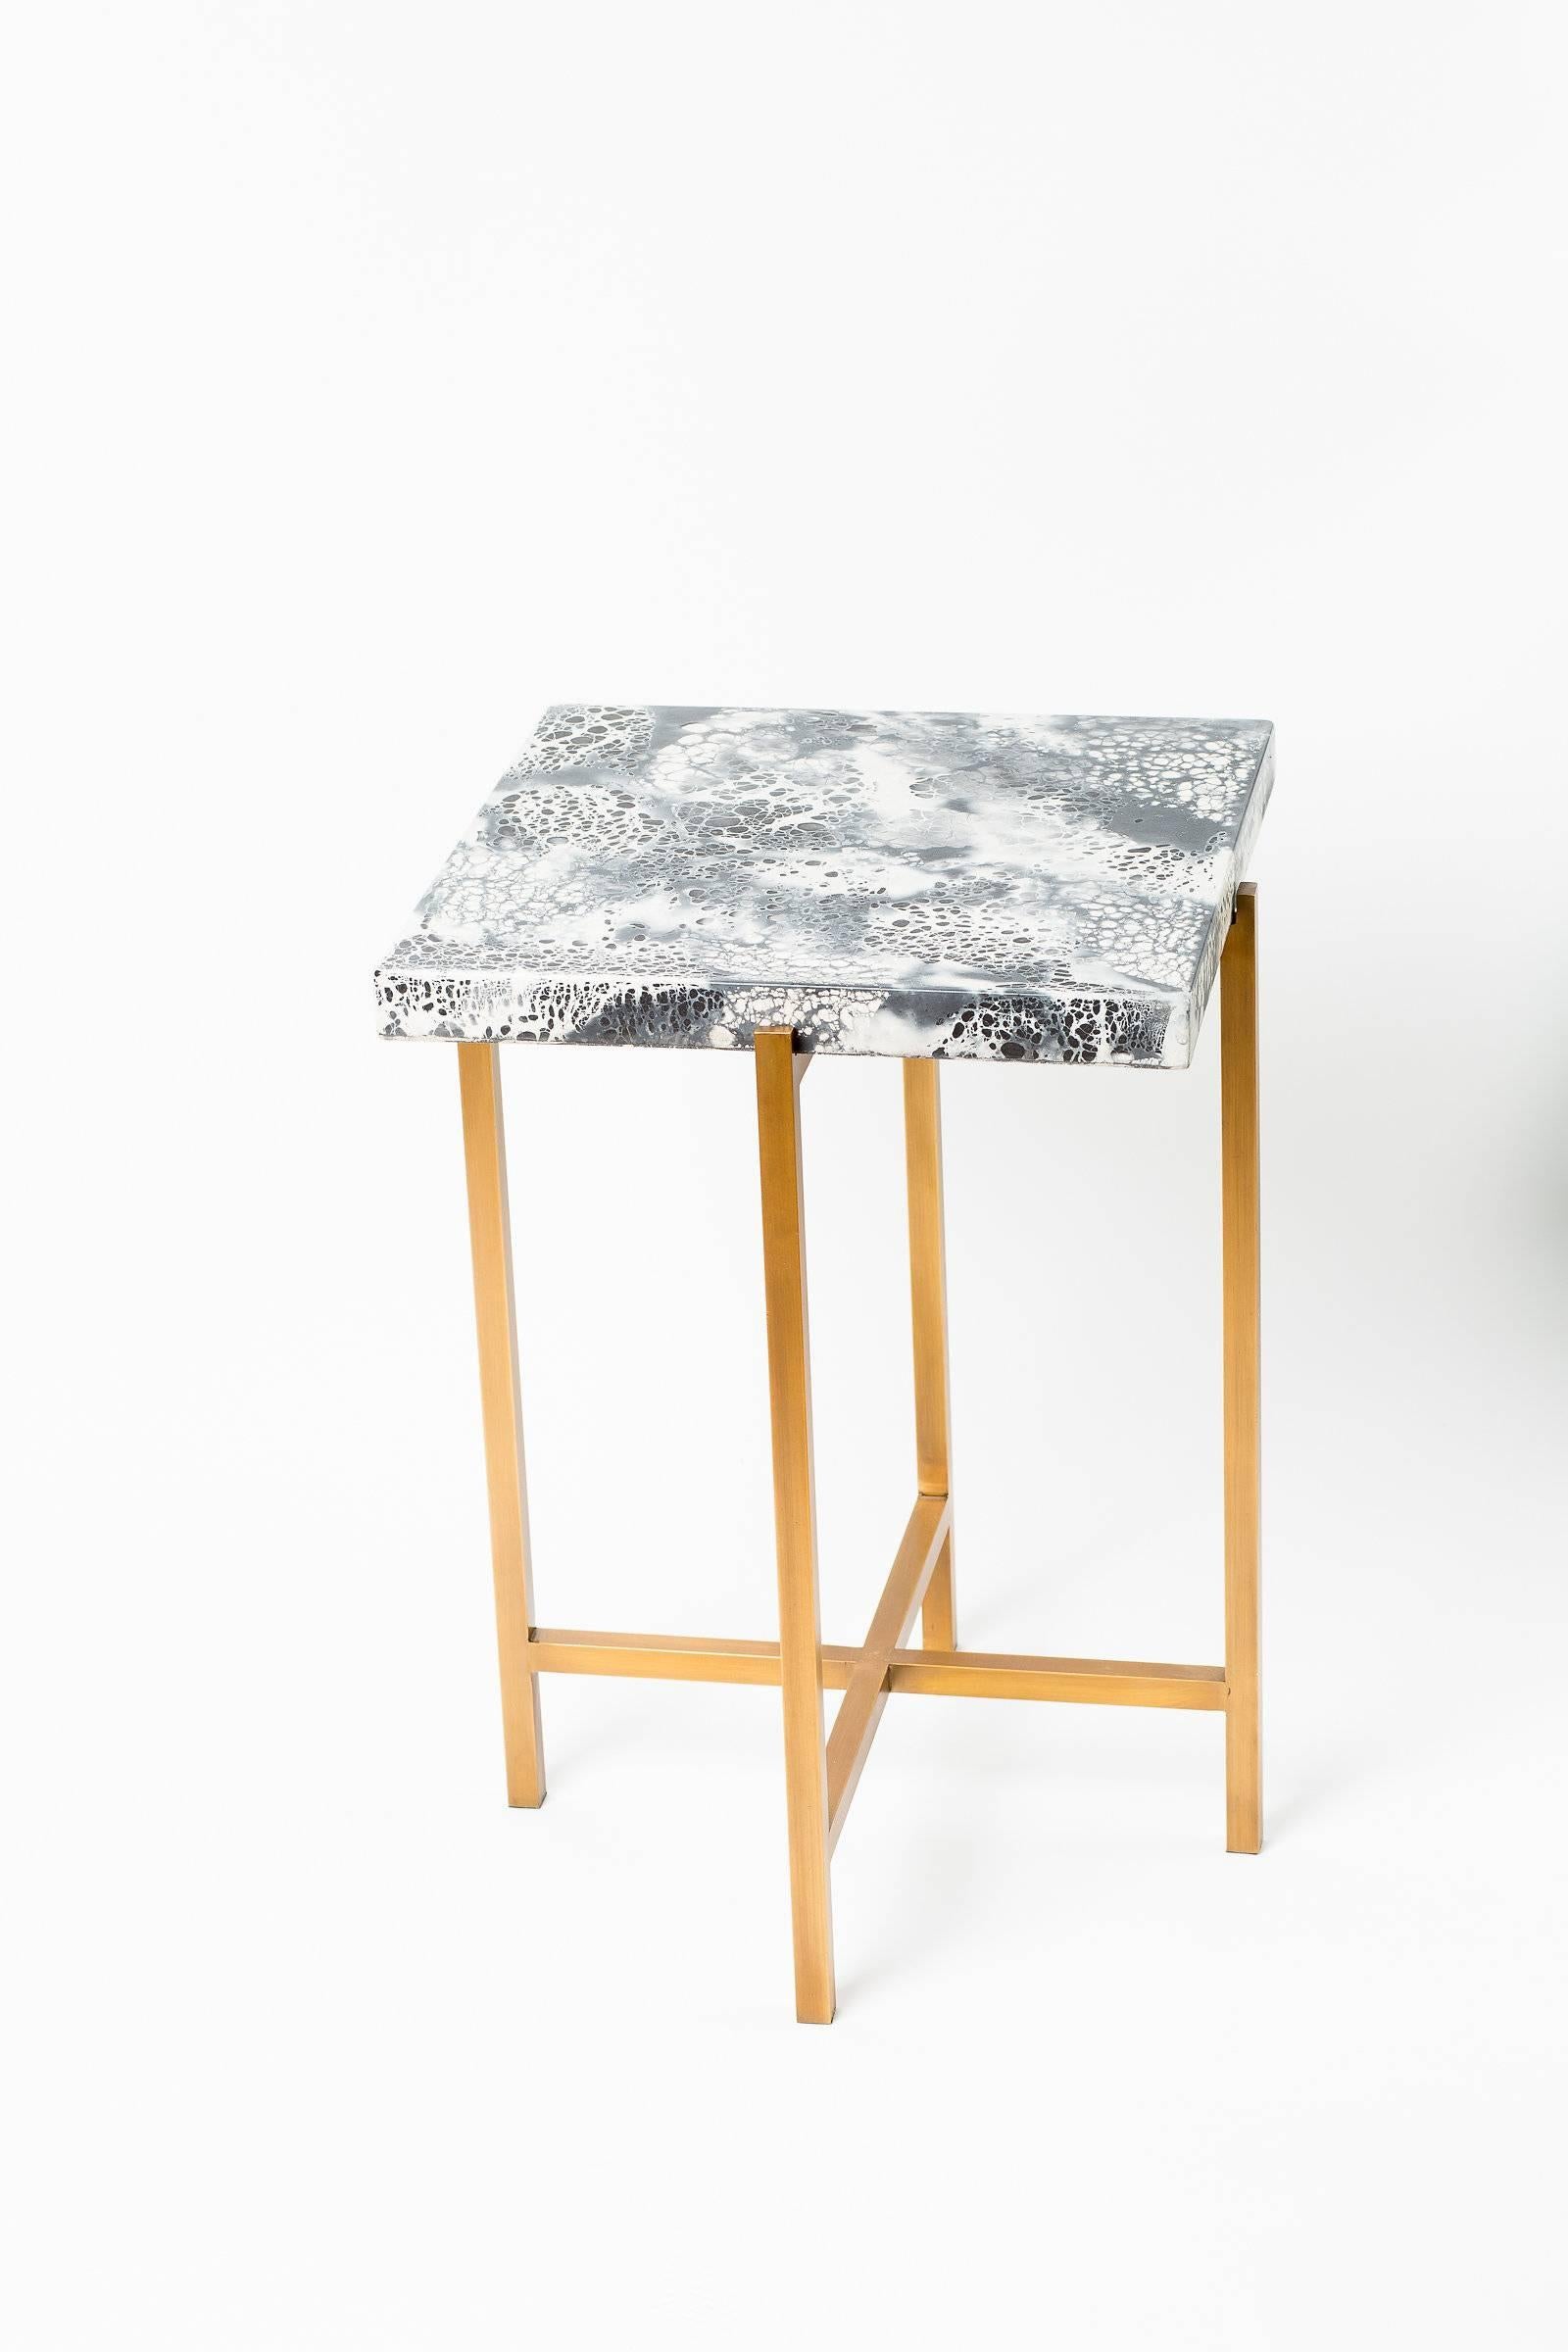 Der graue und weiße Beistelltisch aus glattem Beton von Kelly Behun Studio ist mit einem Sockel aus antikem Messing versehen. Dieses in Kanada gefertigte, robuste Möbelstück ist Ausdruck der klaren, modernen Ästhetik des amerikanischen Designers.